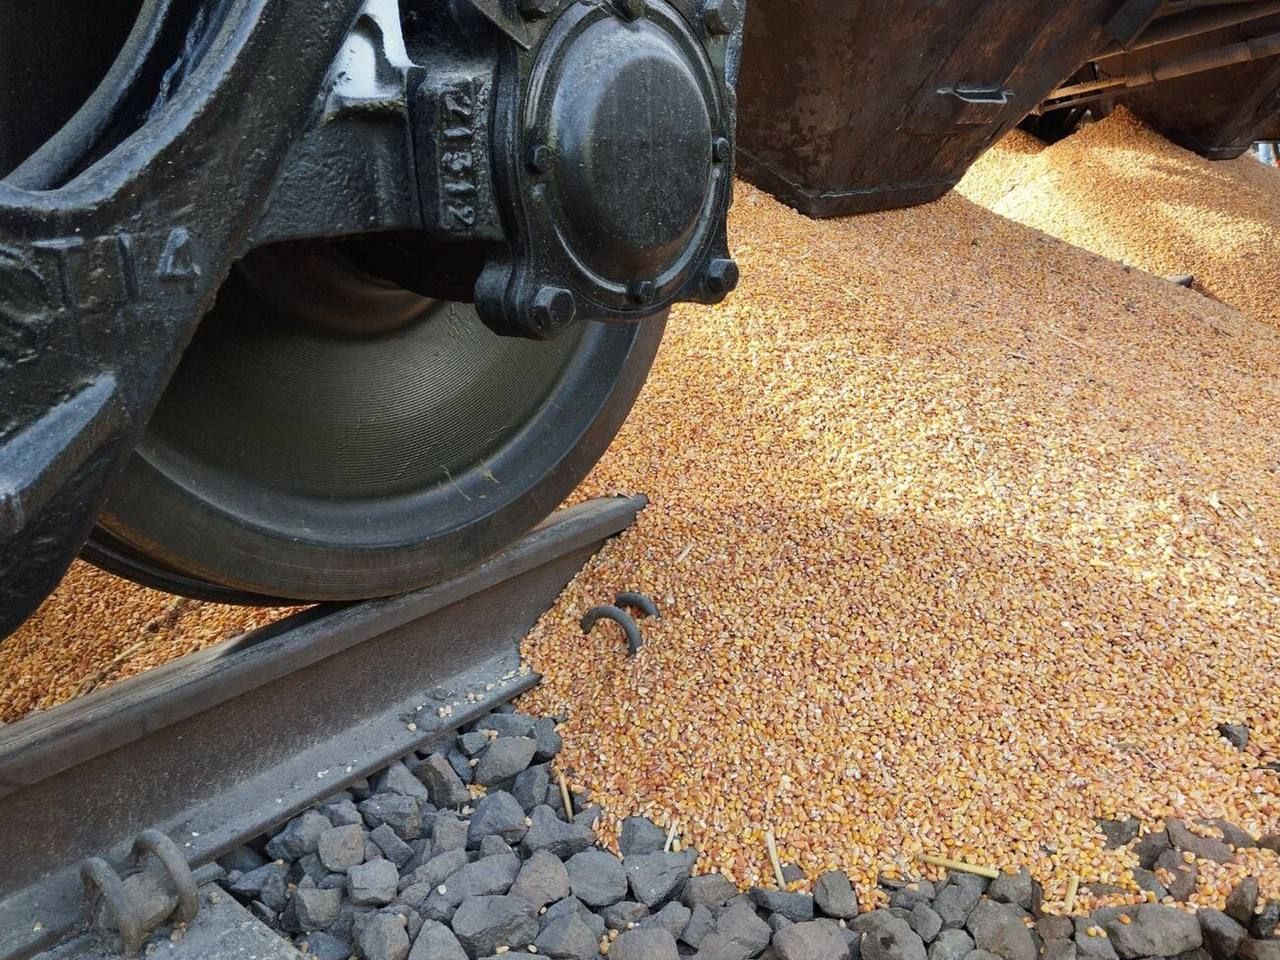 Поляки рассыпали зерно из железнодорожных вагонов Укрзализныци